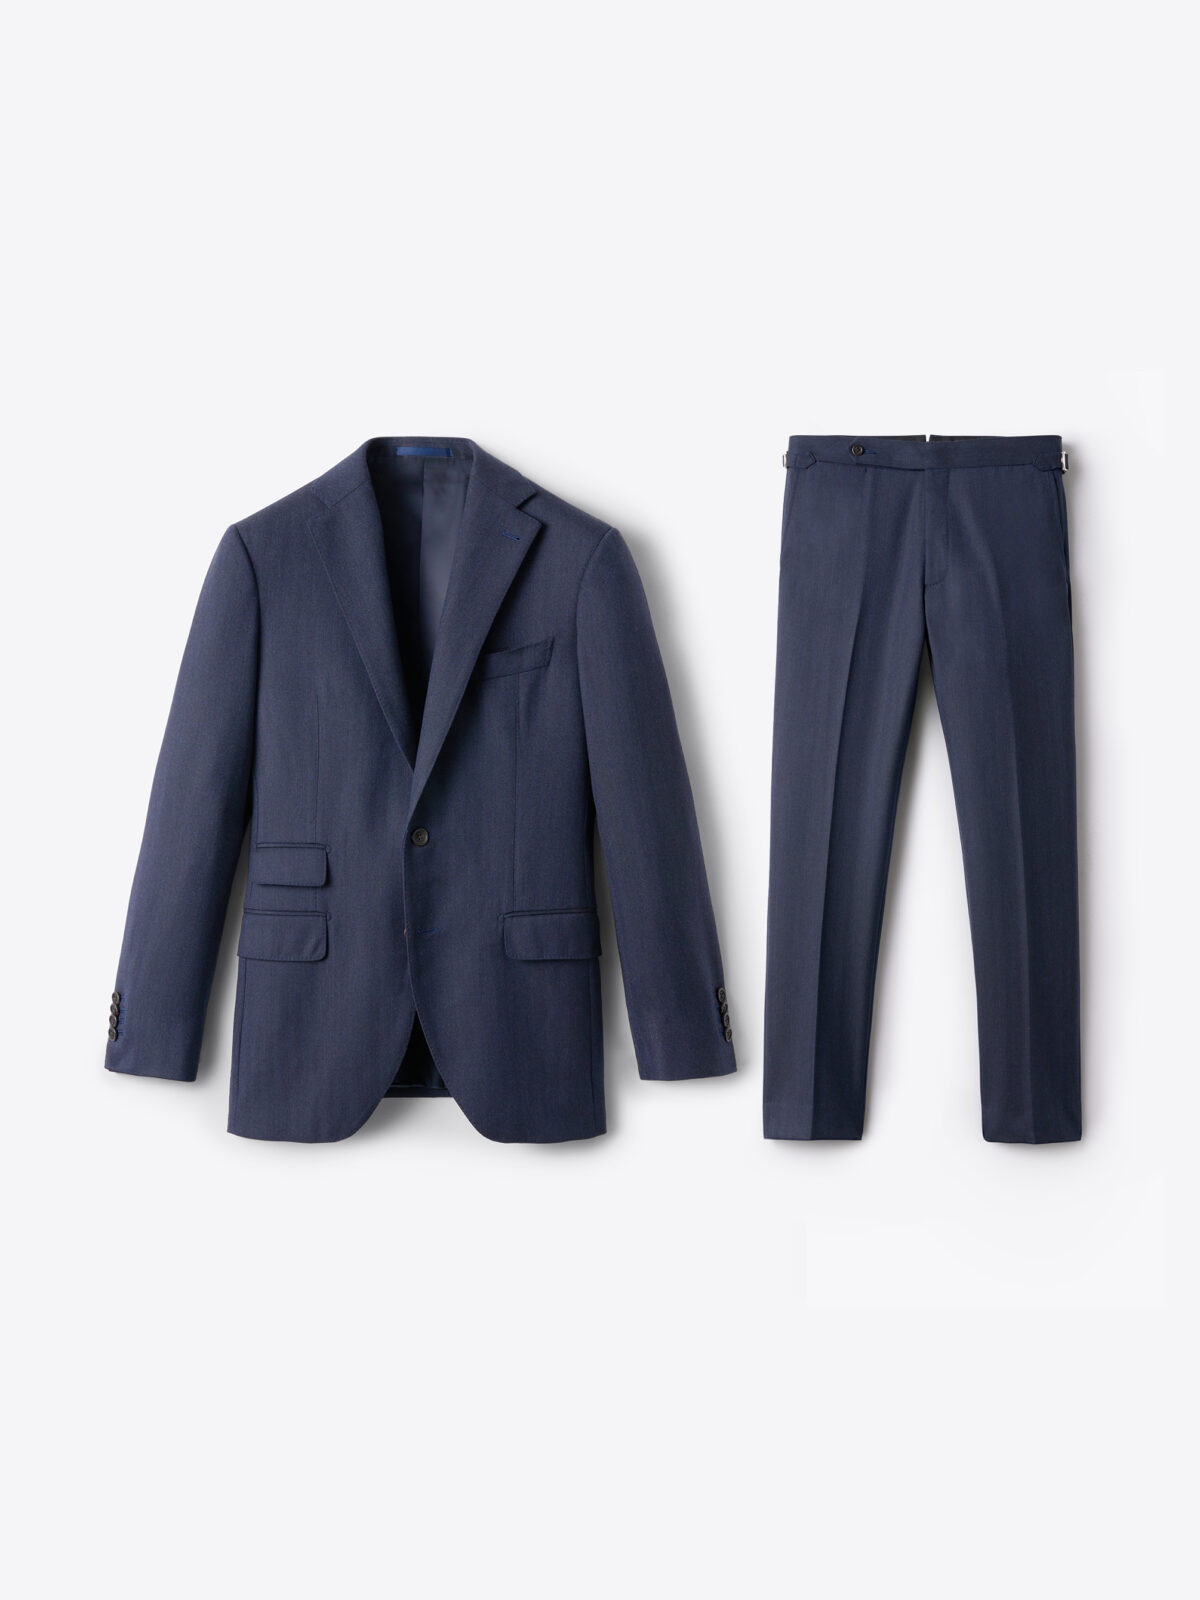 Chaps Gray Jacket & Pant Suit - Size 8